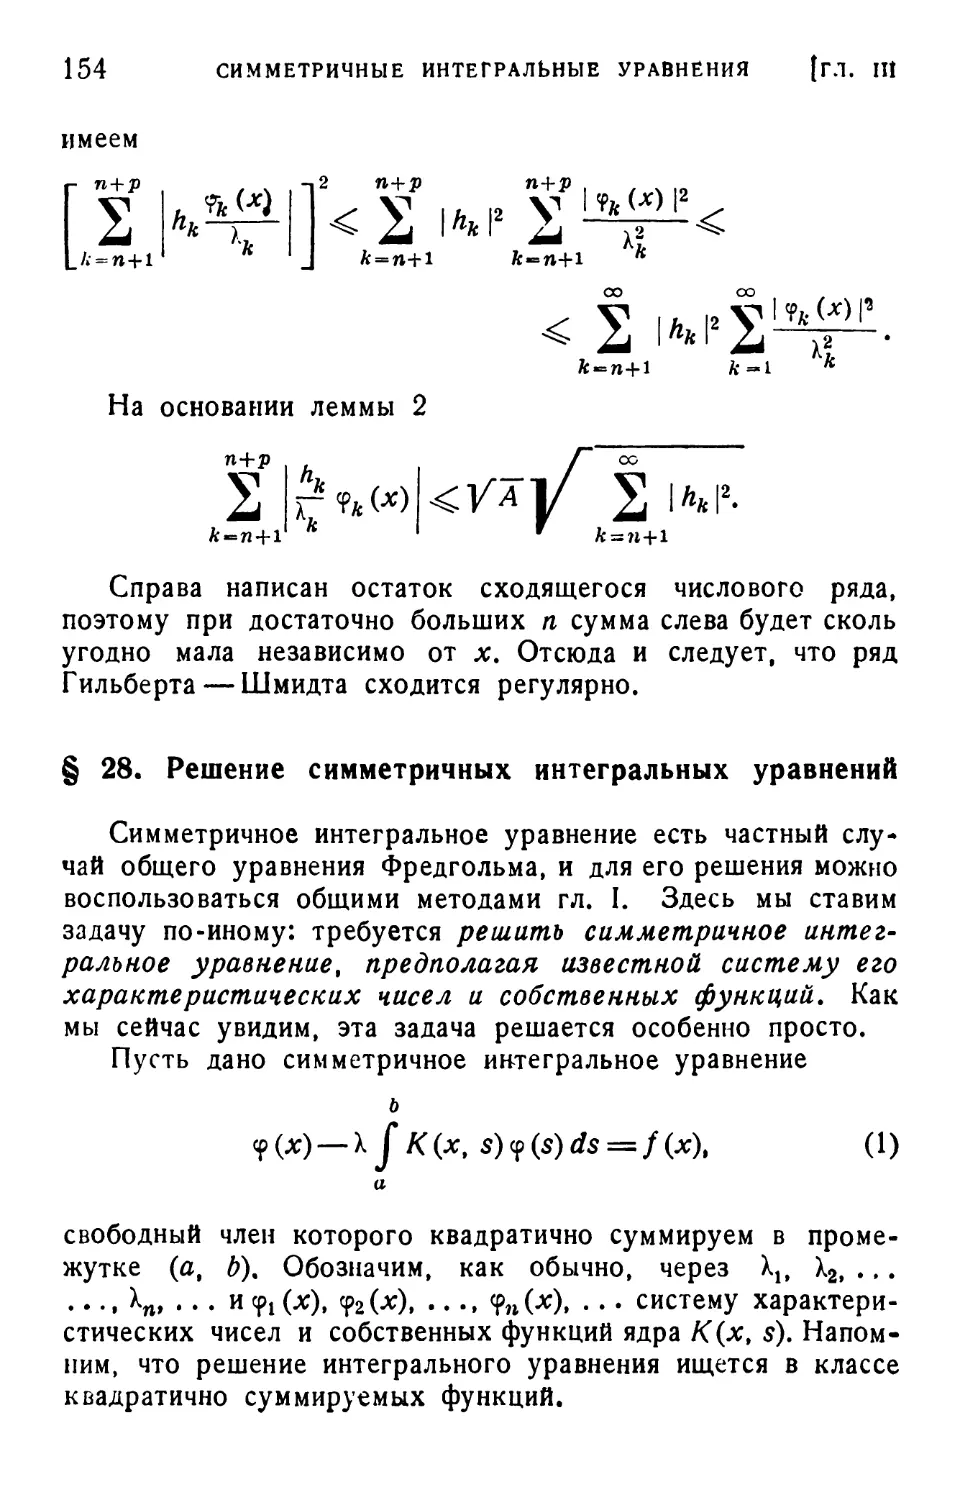 § 28. Решение симметричных интегральных уравнений